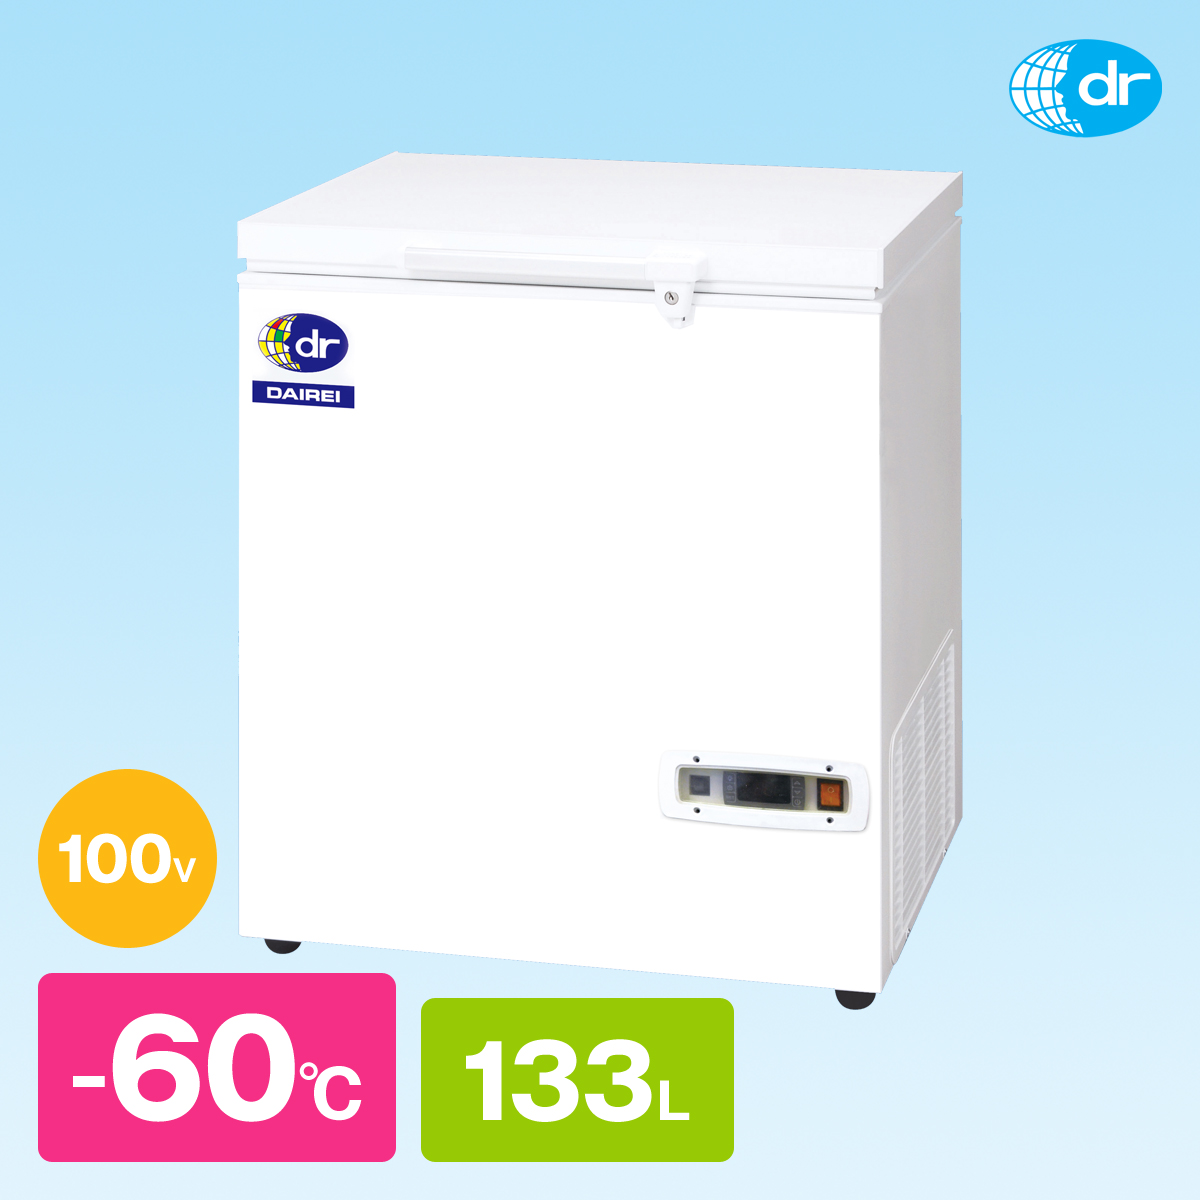 静岡県の個人様がダイレイ製の-60度の超低温冷凍庫『DF-140e』を購入 